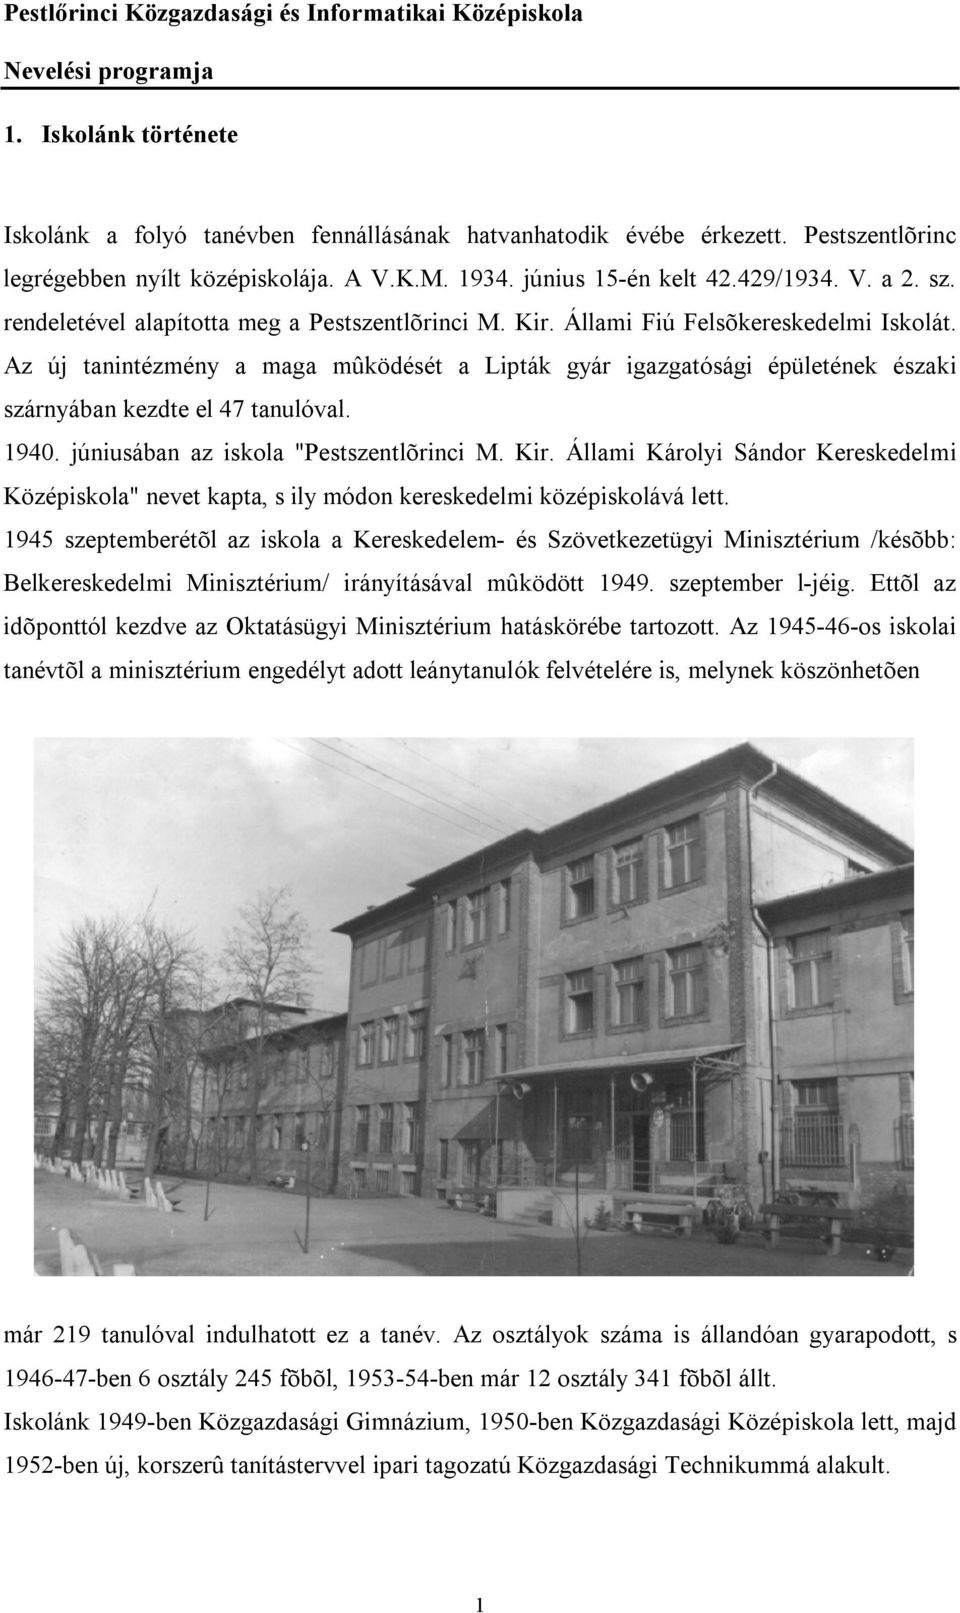 Az új tanintézmény a maga mûködését a Lipták gyár igazgatósági épületének északi szárnyában kezdte el 47 tanulóval. 1940. júniusában az iskola "Pestszentlõrinci M. Kir.